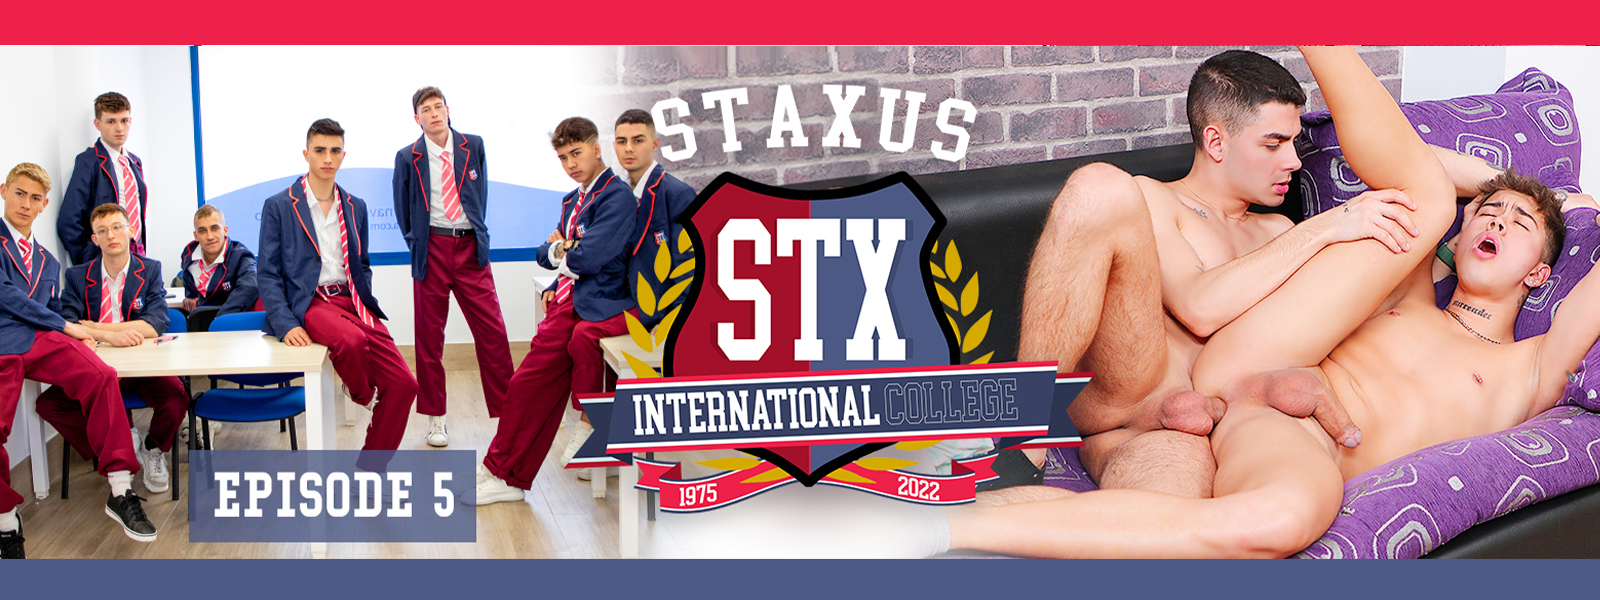 Staxus International College Episode 5